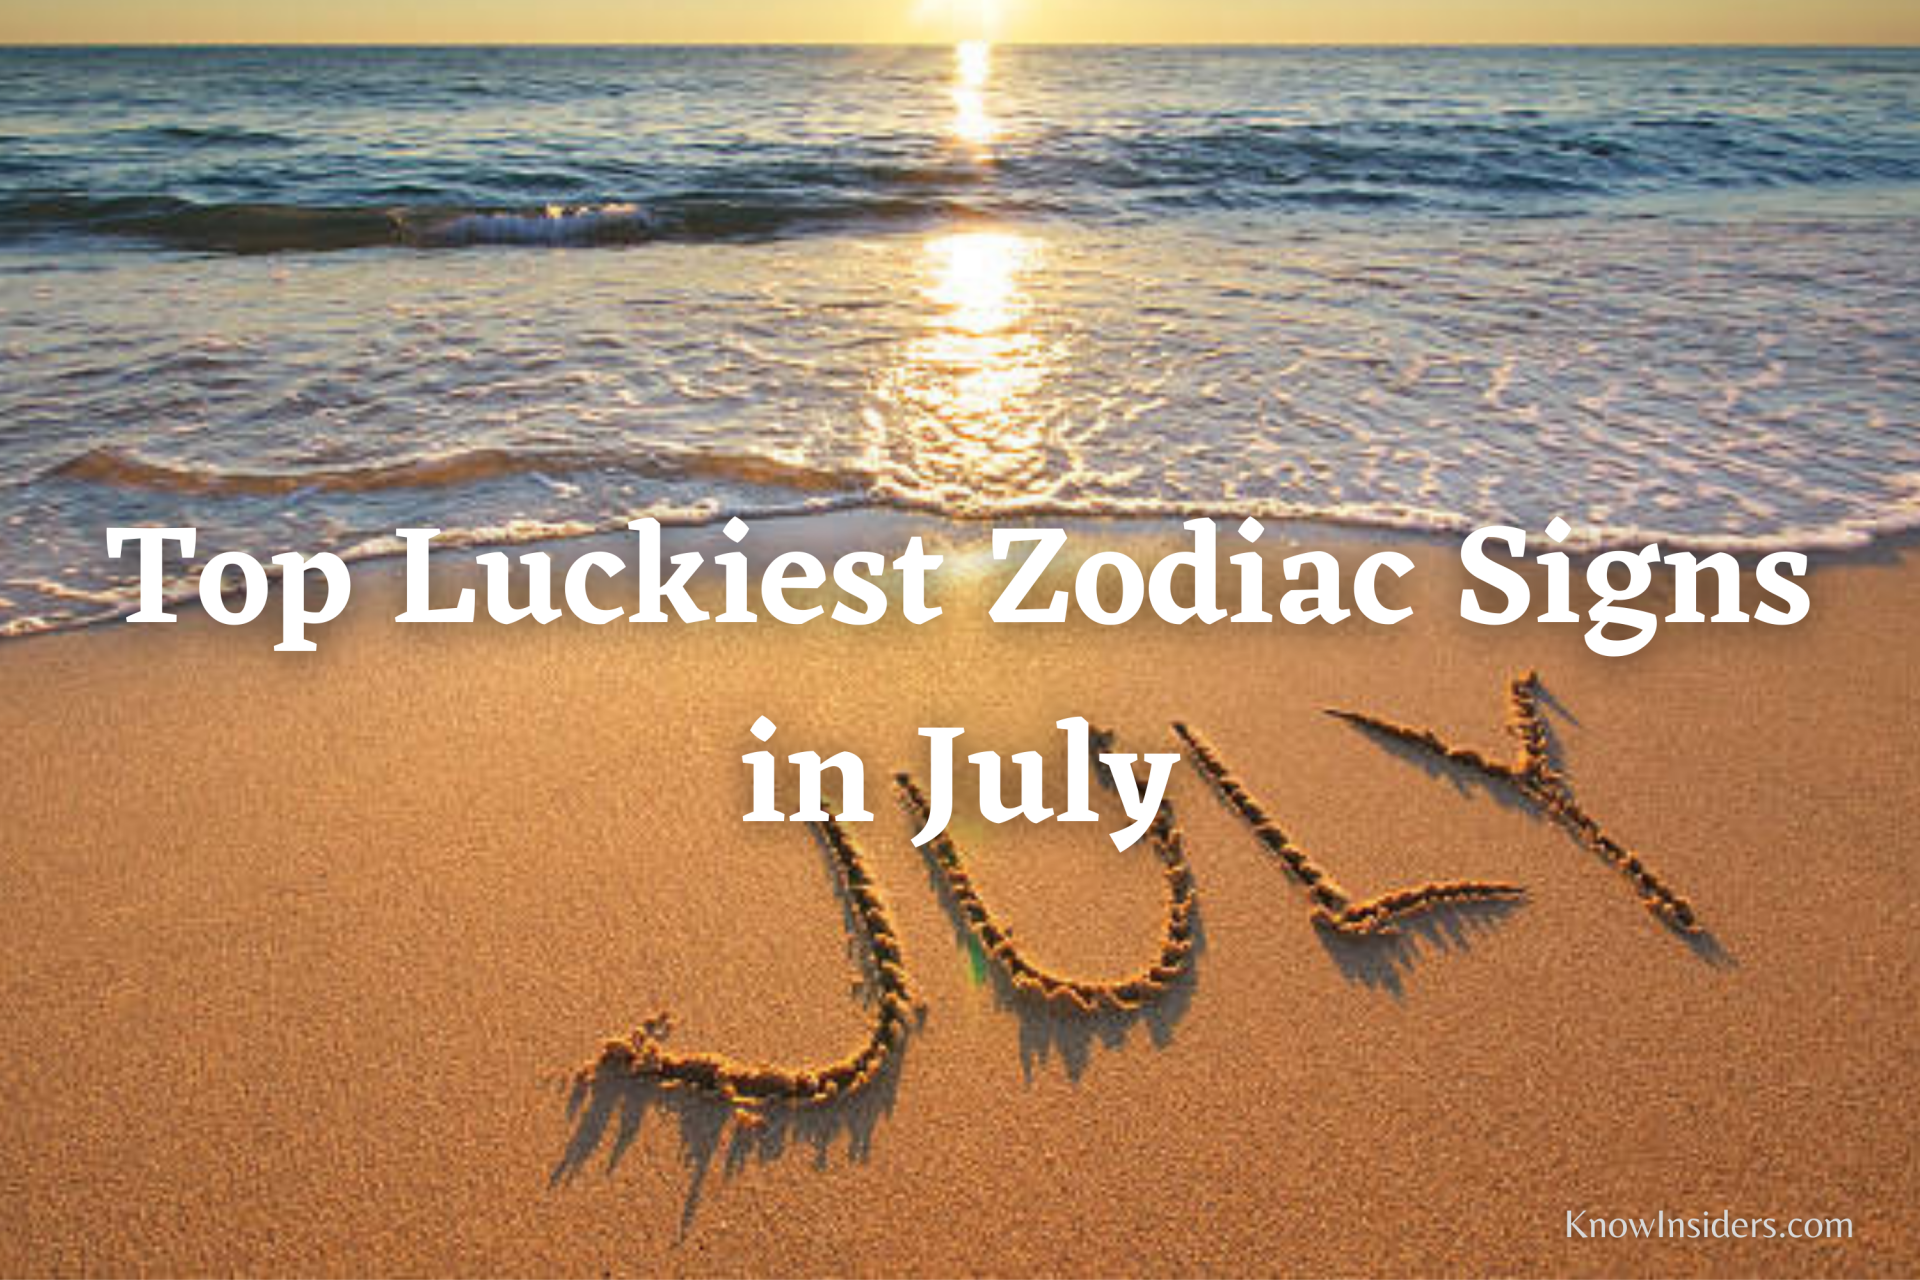 Top Luckiest Zodiac Signs in July